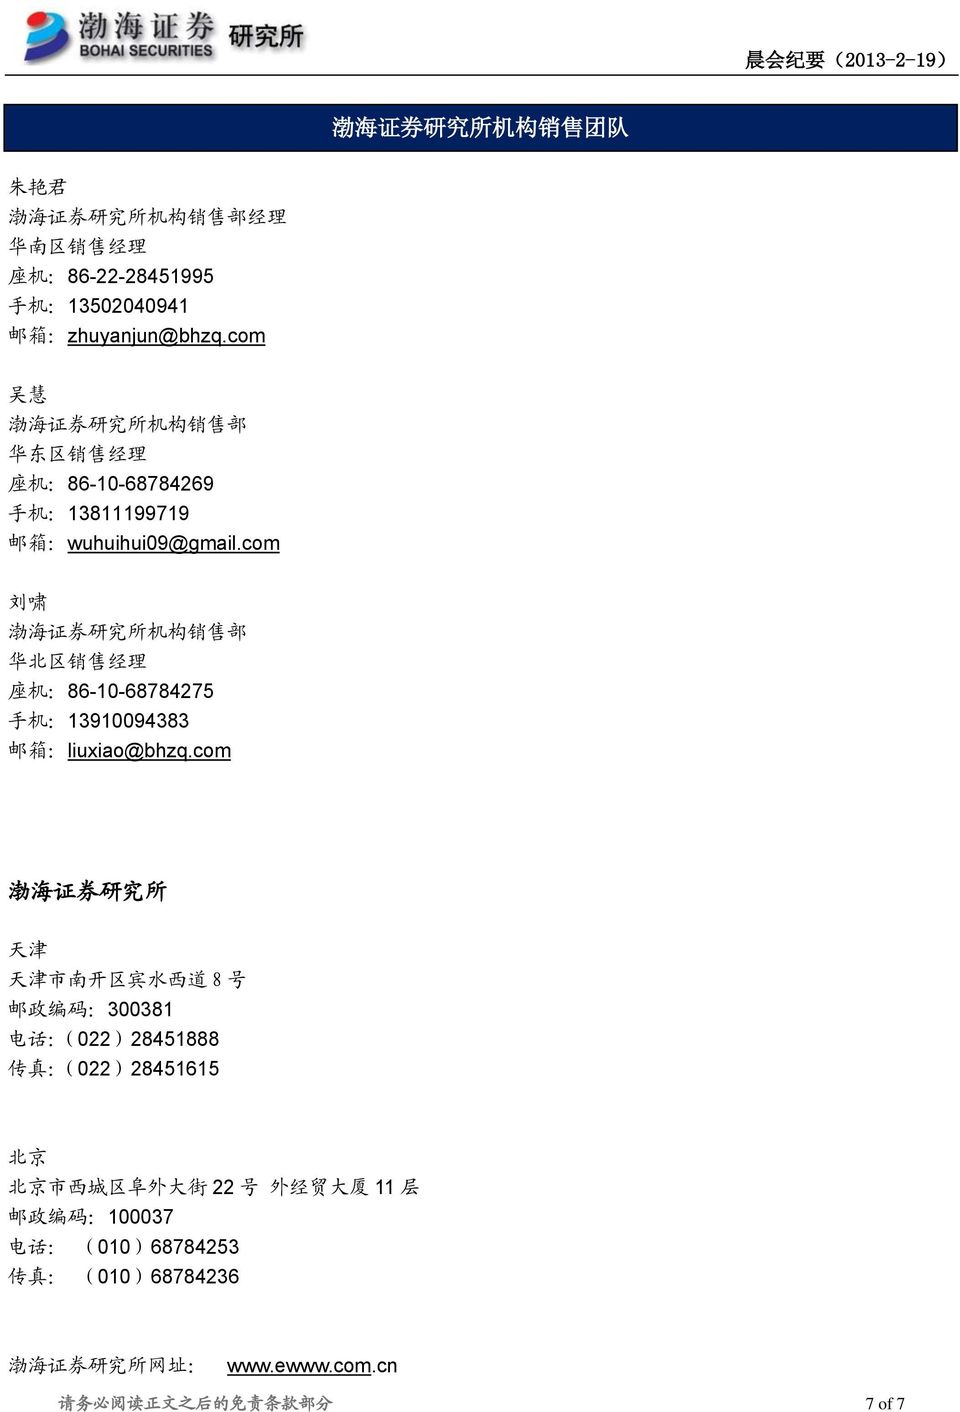 com 刘 啸 渤 海 证 券 研 究 所 机 构 销 售 部 华 北 区 销 售 经 理 座 机 :86-10-68784275 手 机 :13910094383 邮 箱 :liuxiao@bhzq.